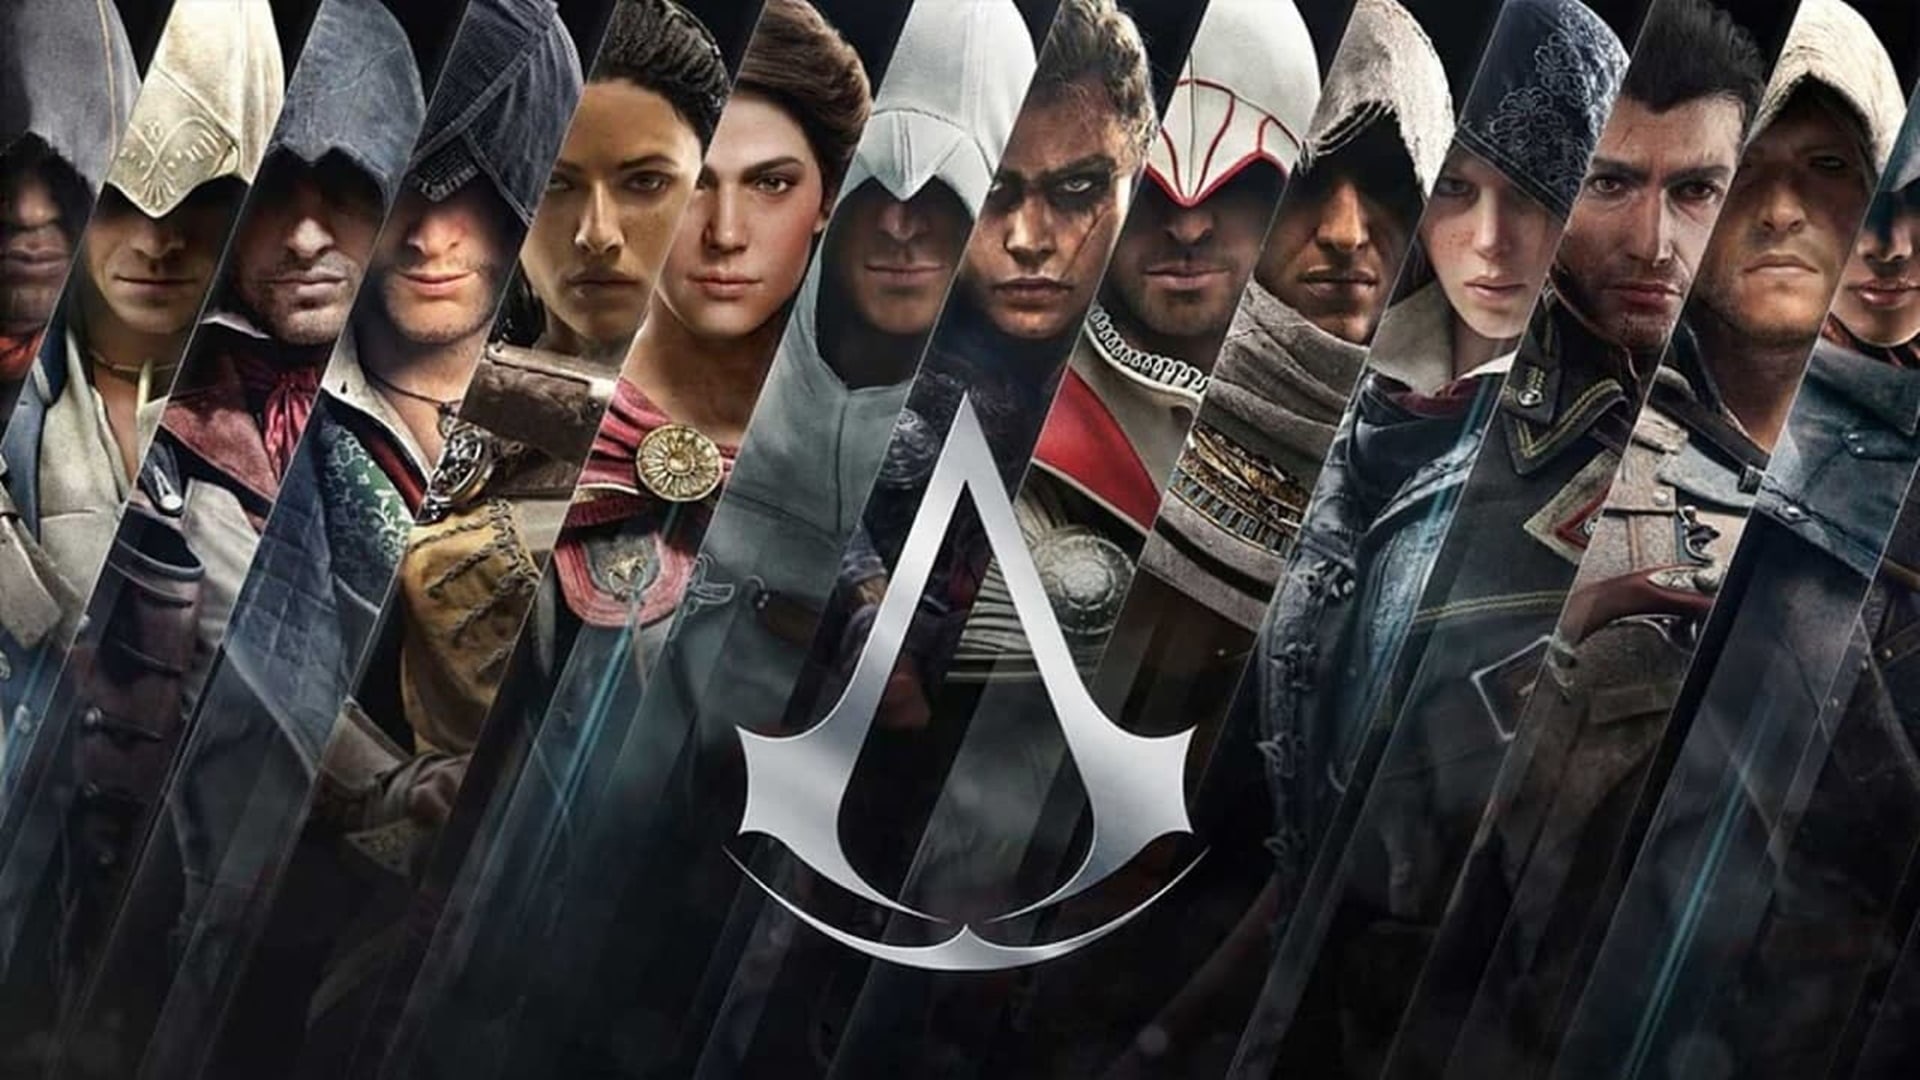 La franquicia Assassin's Creed está disponible a bajo precio en la gran venta de Xbox, GamersRD